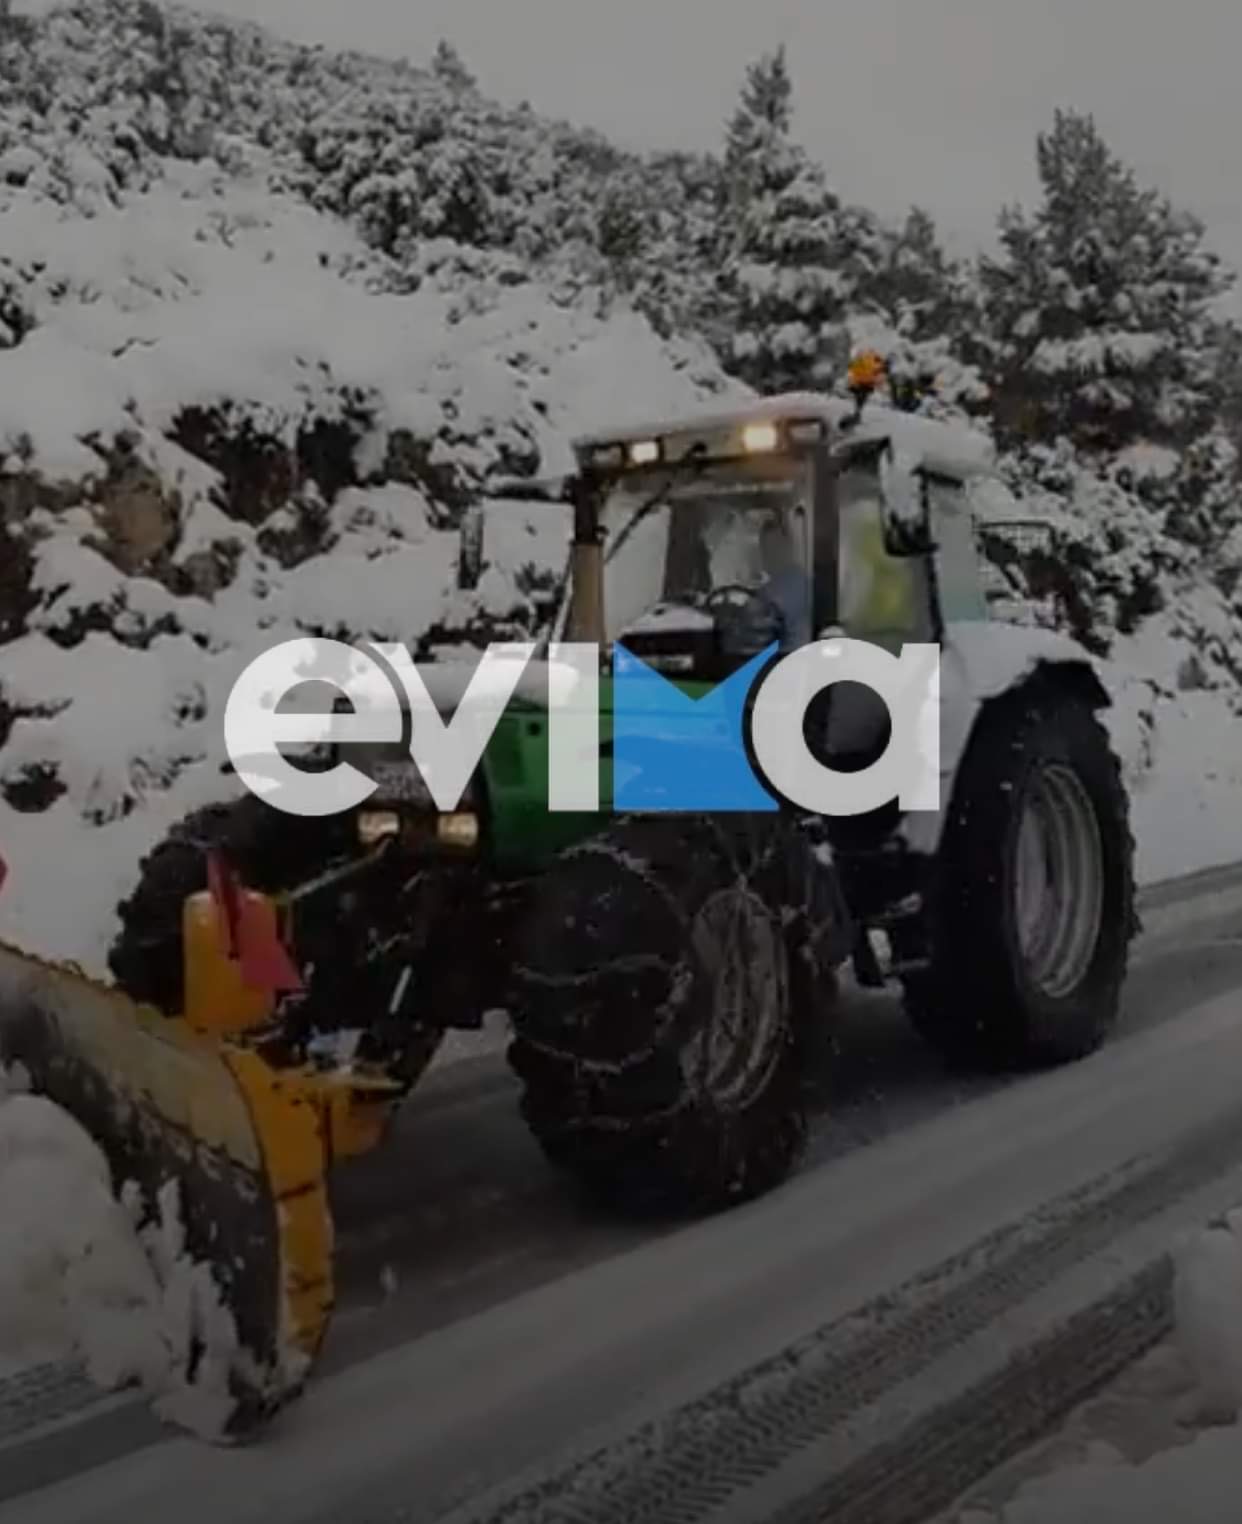 Εύβοια: Σφοδρή χιονόπτωση στα ορεινά χωριά του Δήμου Διρφύων Μεσσαπίων (pics)